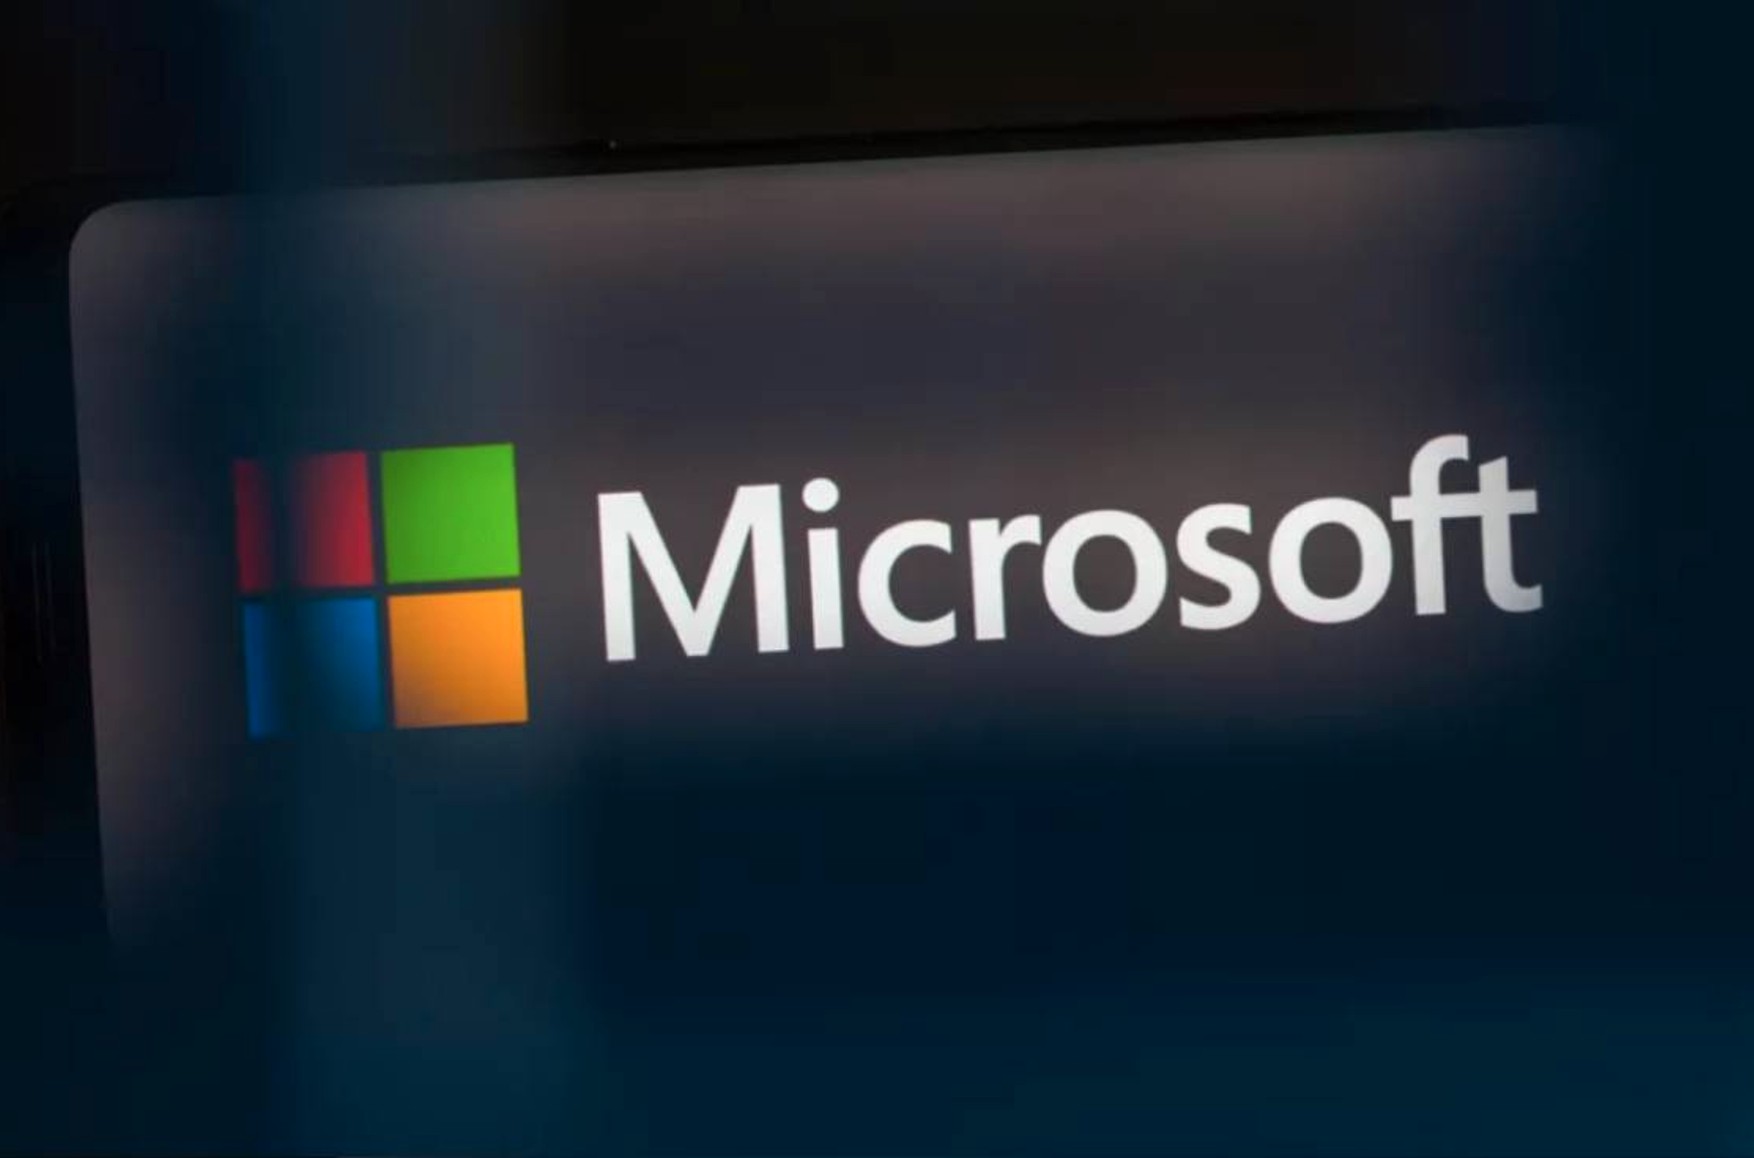 Microsoft постепенно сокращает свой бизнес в России, пока от него там почти ничего не останется — президент компании Брэд Смит